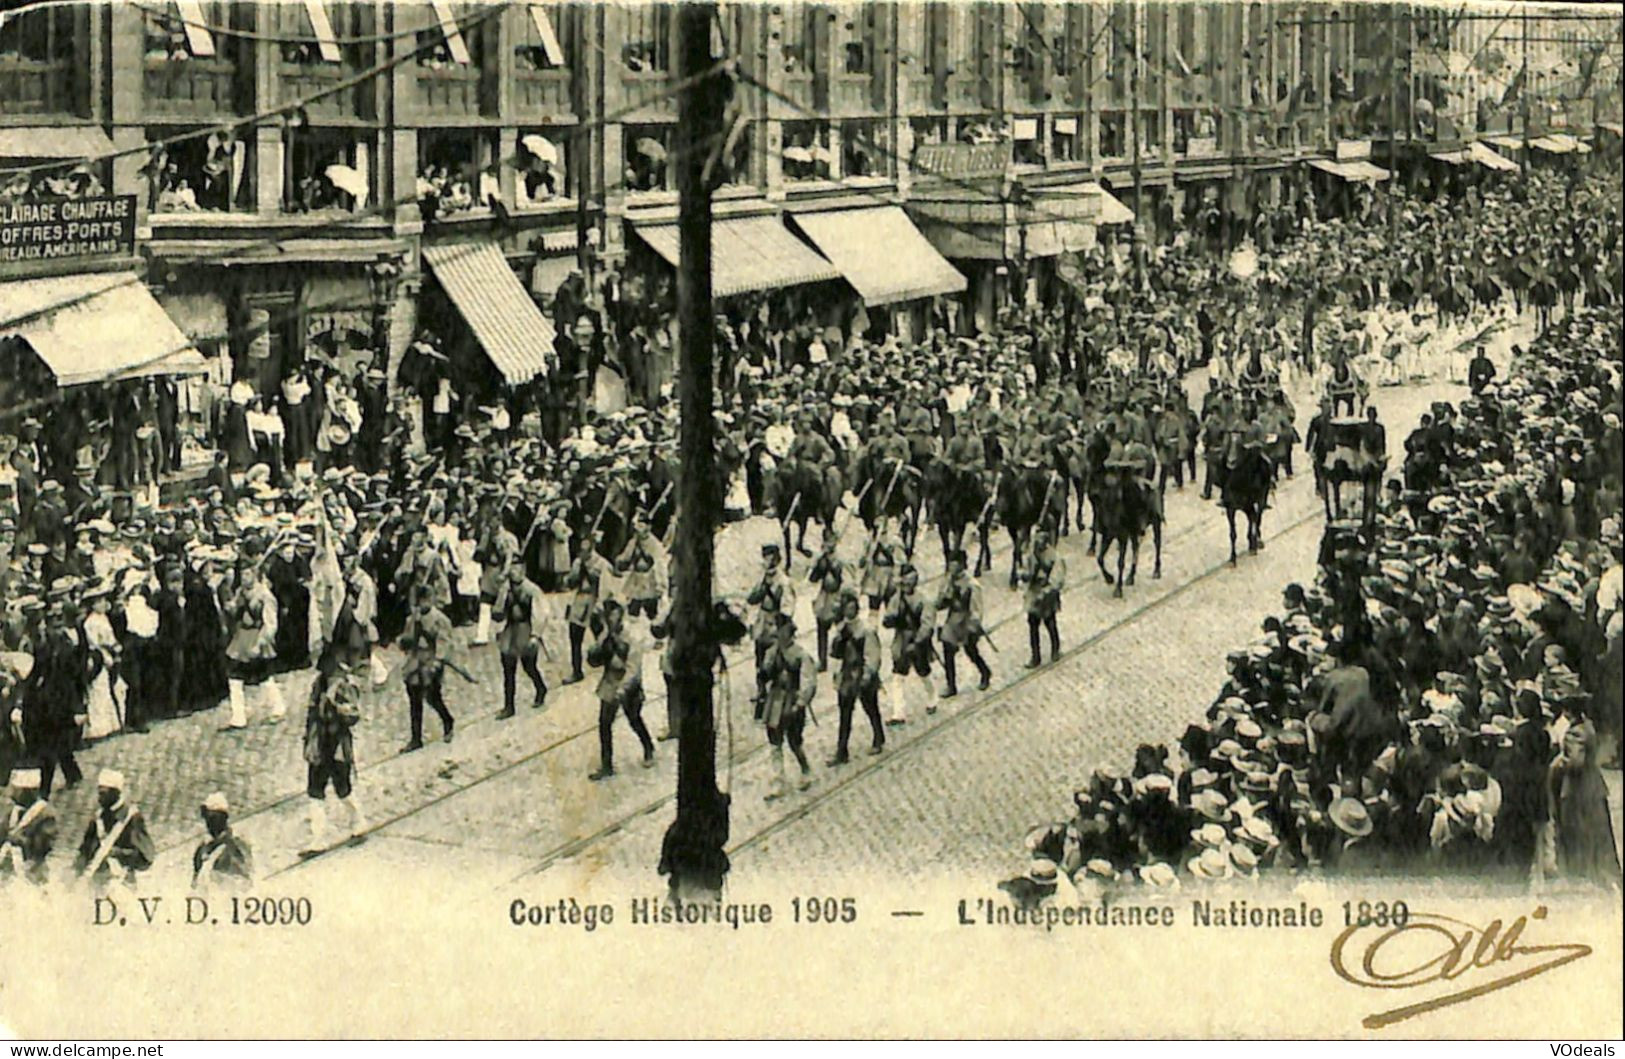 Belgique - Brussel - Bruxelles - Cortège Historique 1905 - L'Indépendance Nationale 1830 - Fêtes, événements